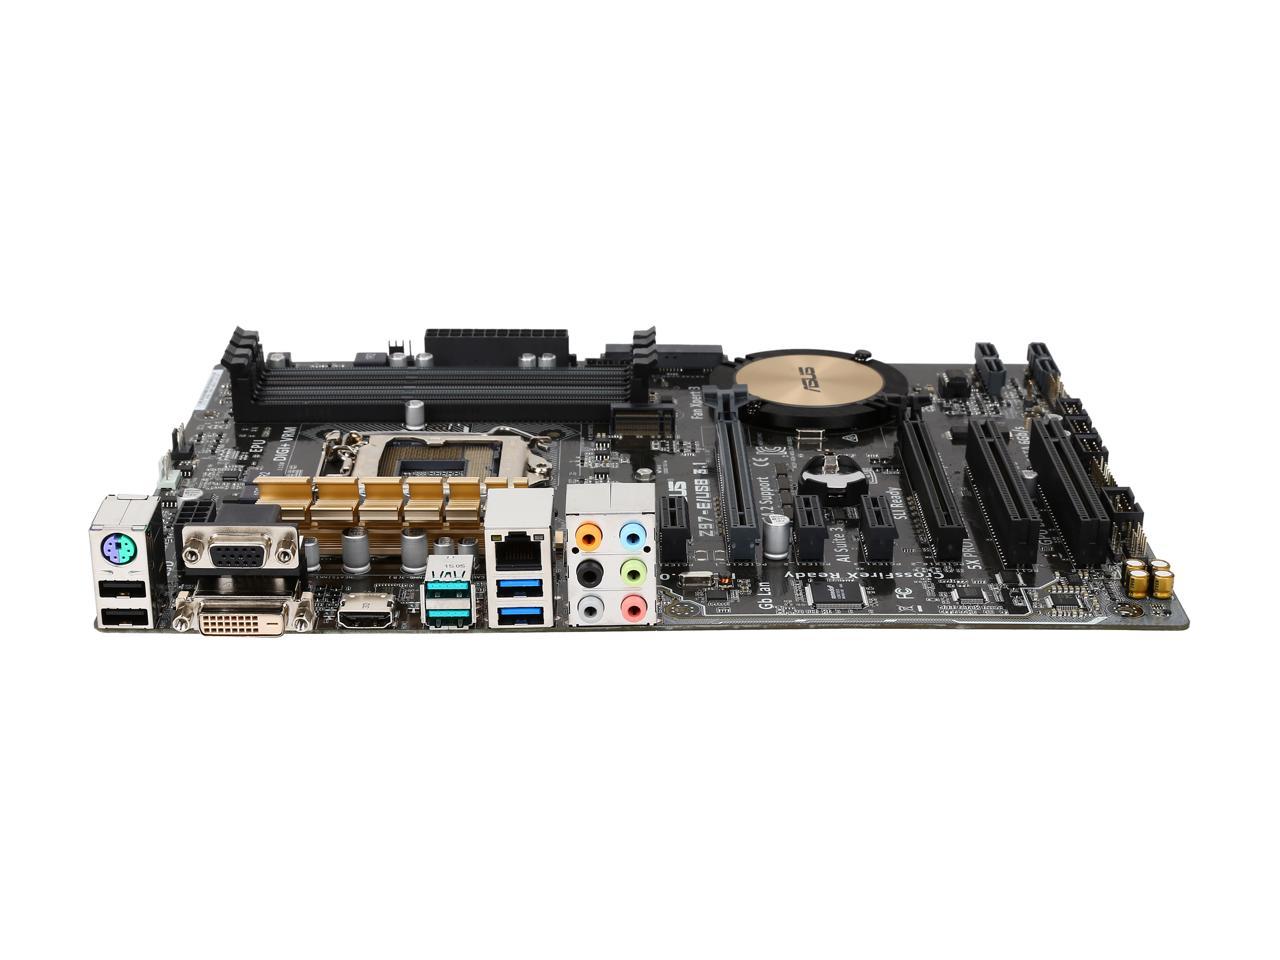 ASUS Z97-E/USB3.1 LGA 1150 Intel Z97 HDMI SATA 6Gb/s USB 3.1 USB 3.0 ATX Intel Motherboard